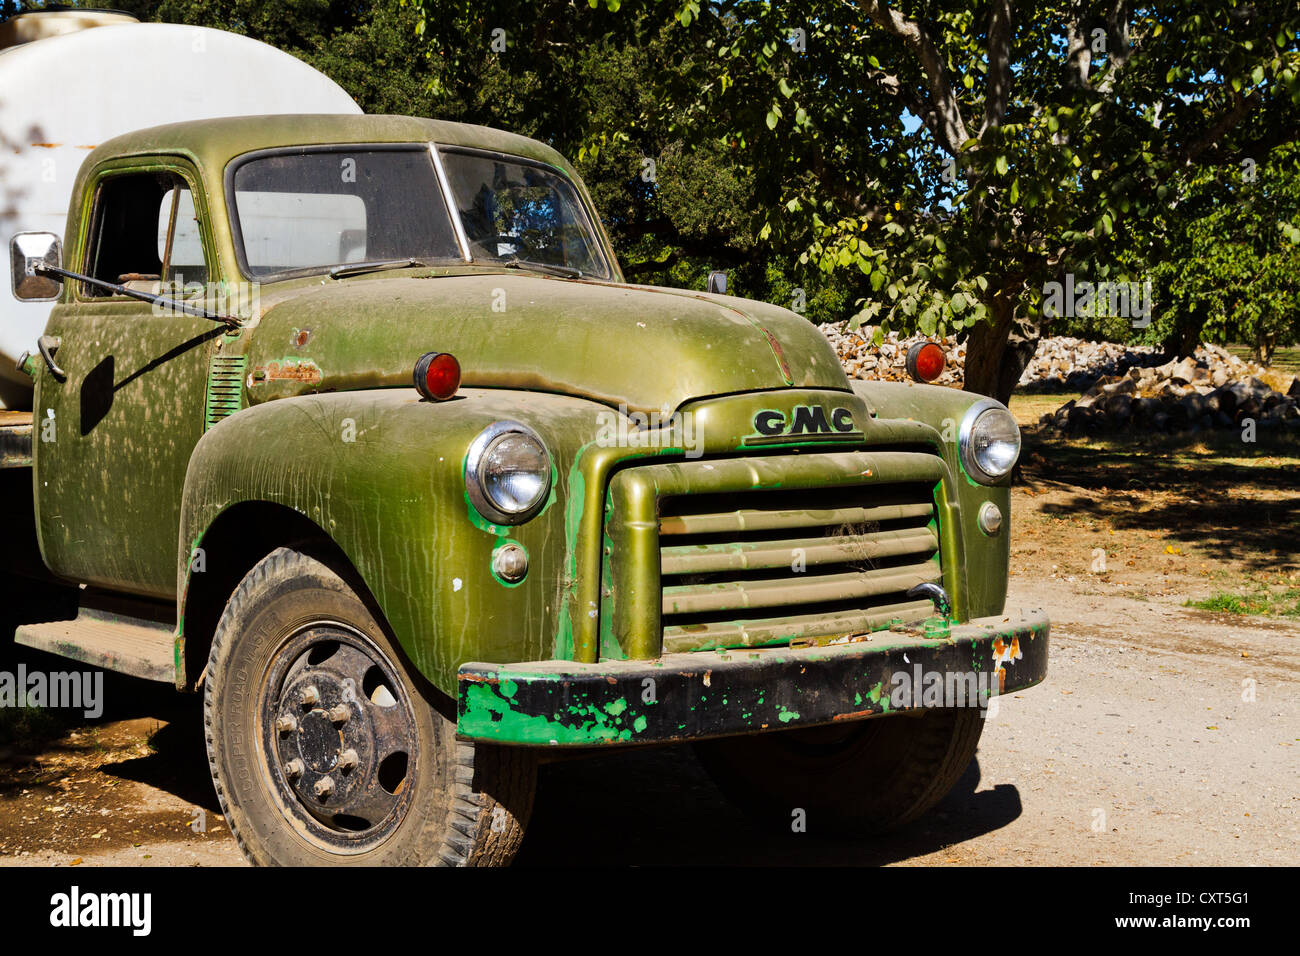 Un vieux camion-citerne GMC délabré parqués dans un verger Banque D'Images